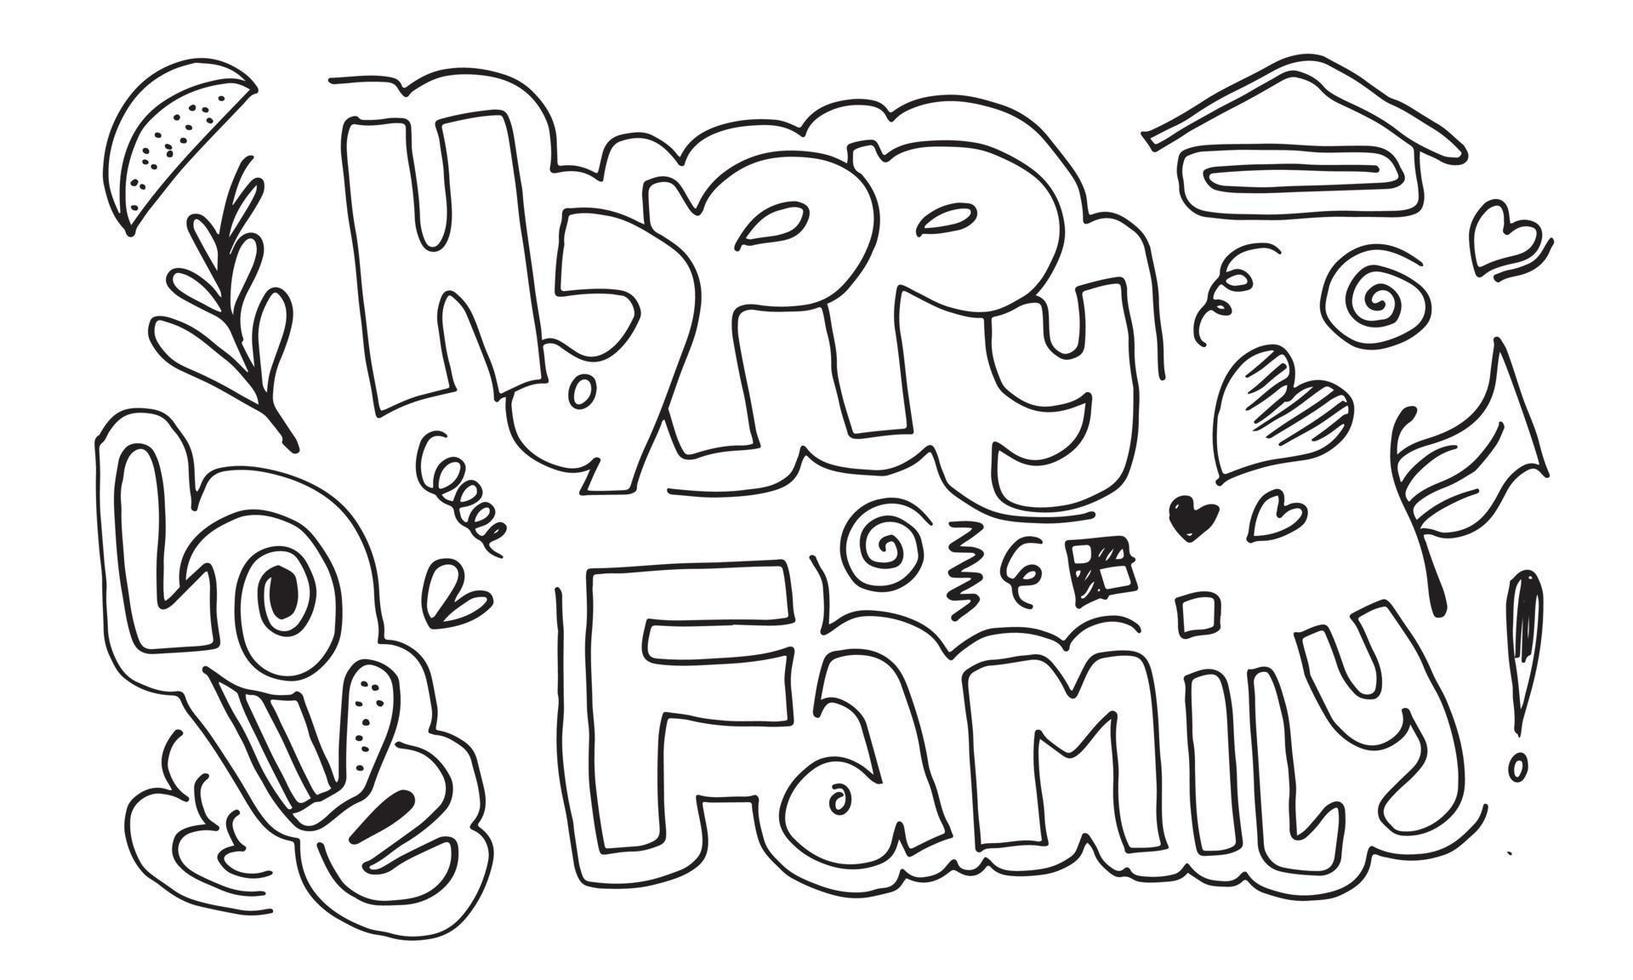 une collection de jolis dessins à la main doodle tels que l'écriture d'une famille heureuse, l'amour et d'autres symboles sur fond blanc vecteur